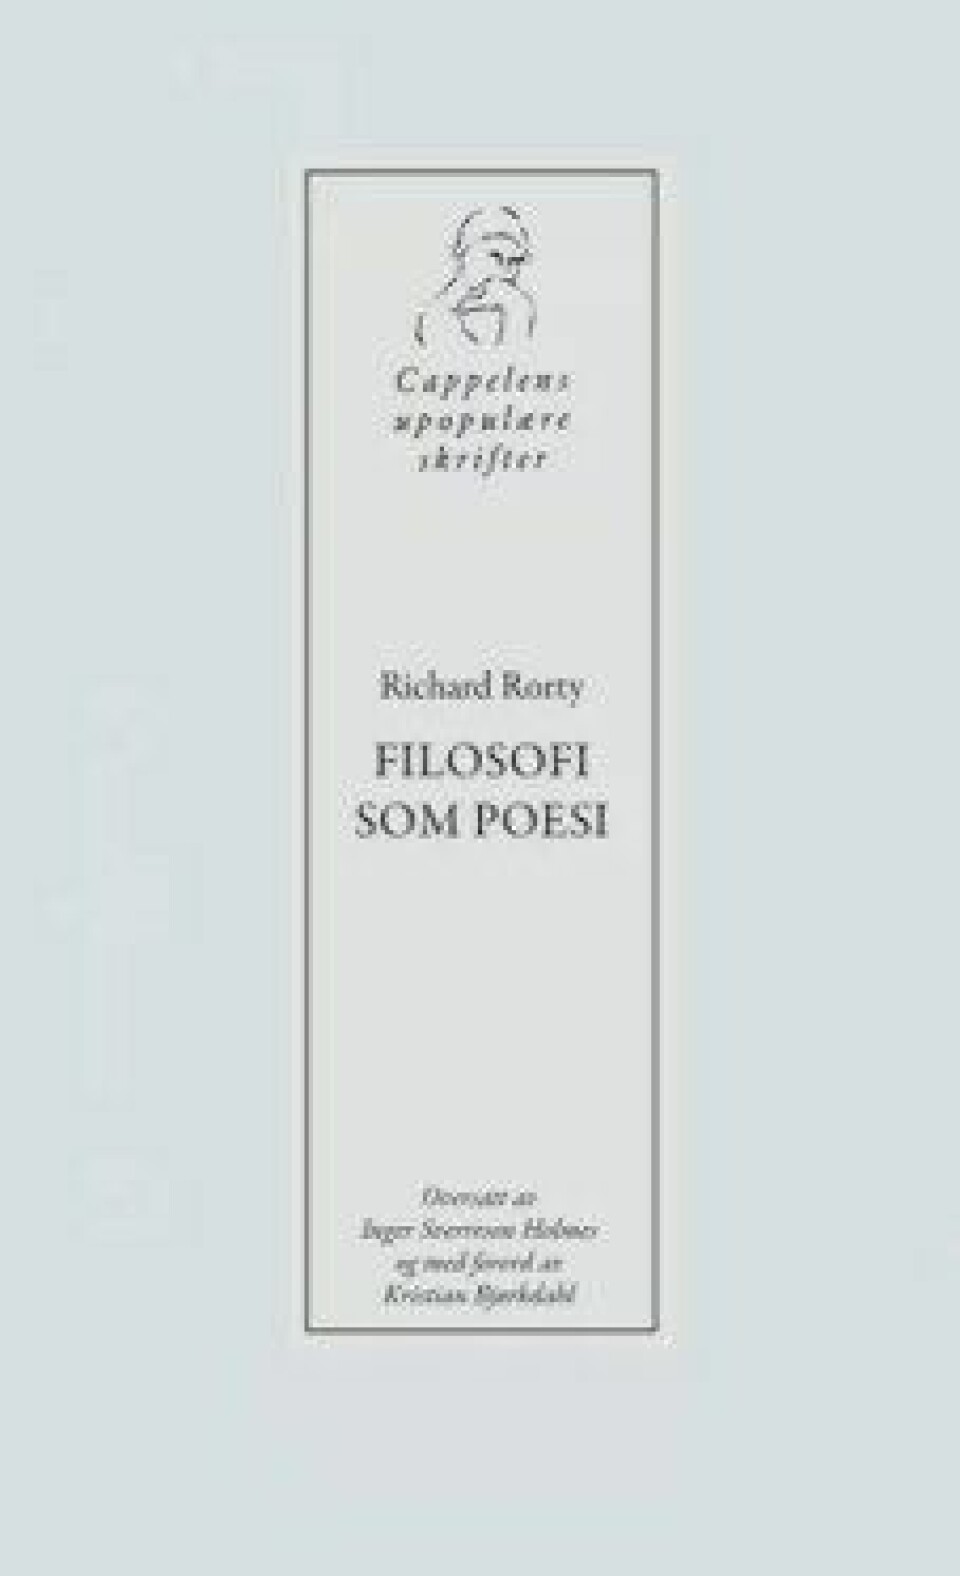 Filosofi som poesi av Richard Rorty. Oversatt av Inger Sverreson Holmes og med forord av Kristian Bjørkdahl, Cappelen Damm 2018.